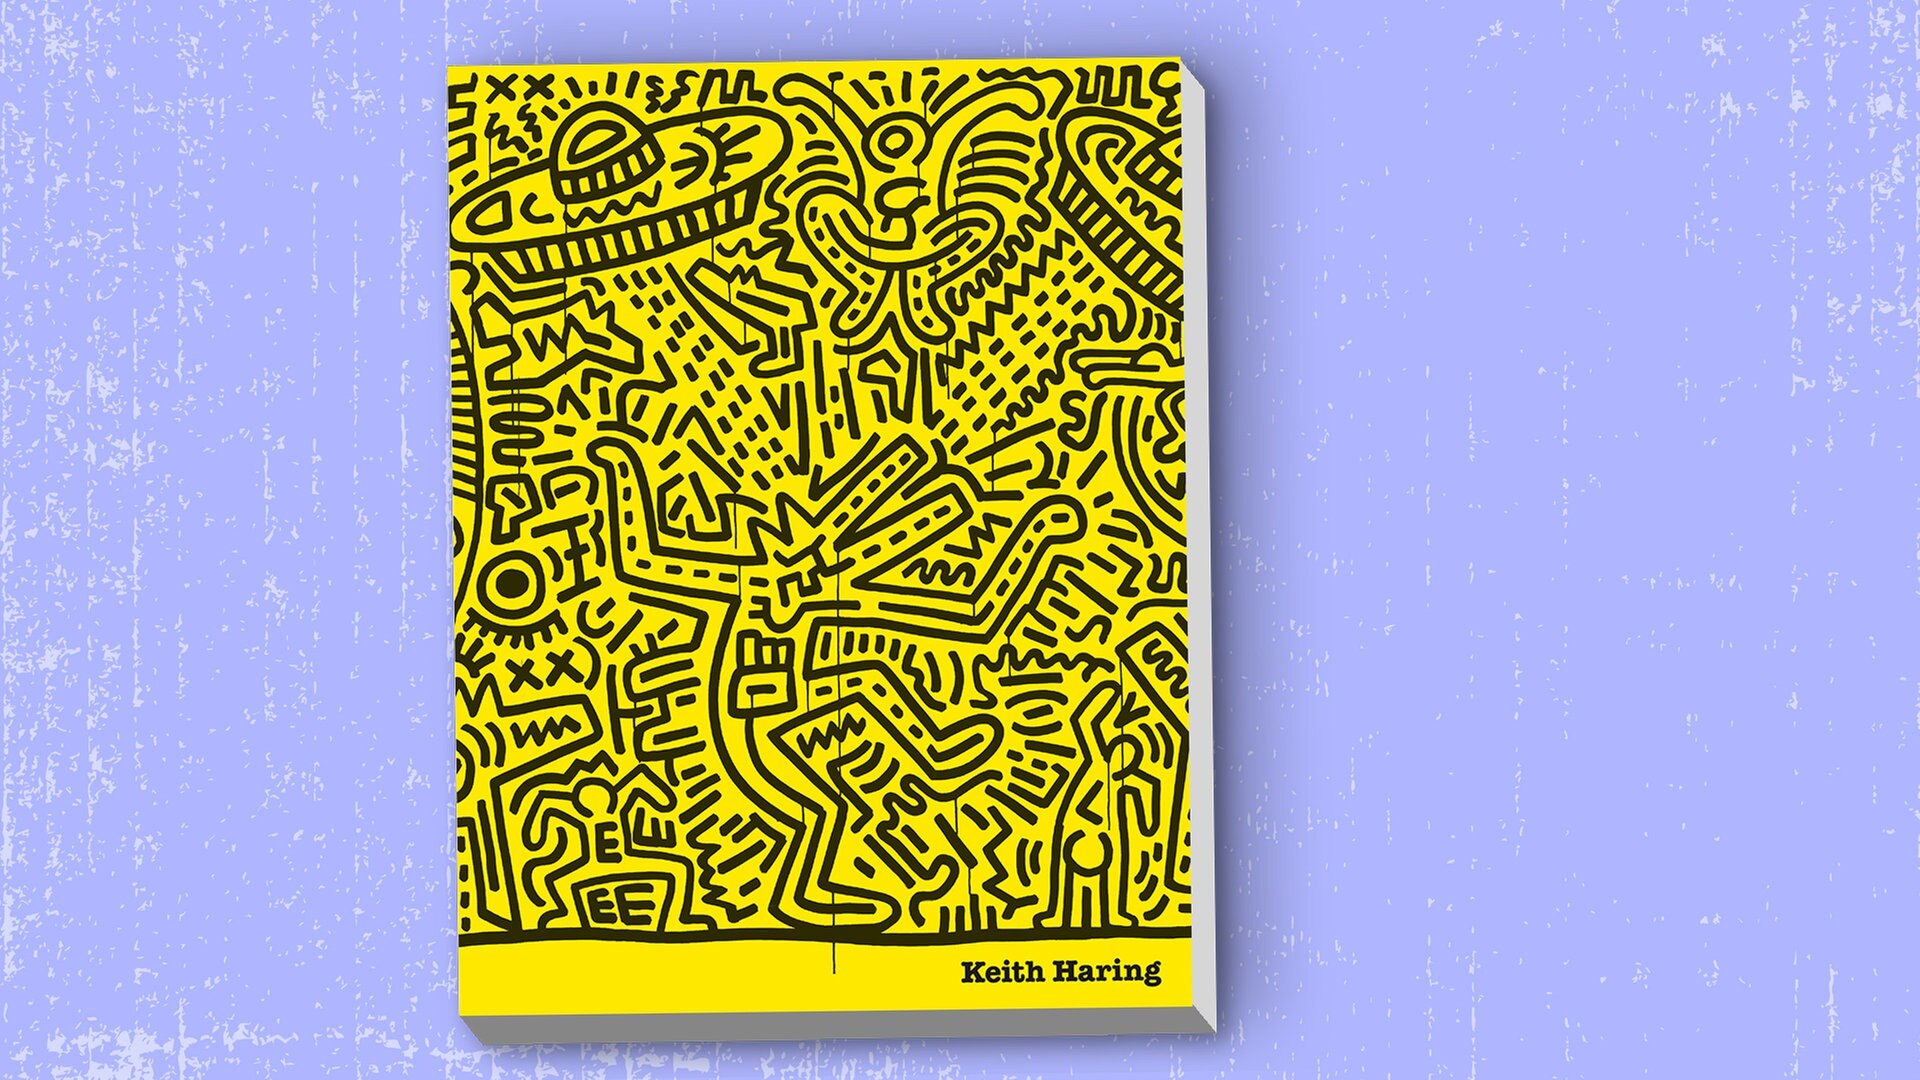 Keith Haring Bildband Mit Werken Des Pop Art Kunstlers Ndr De Kultur Buch